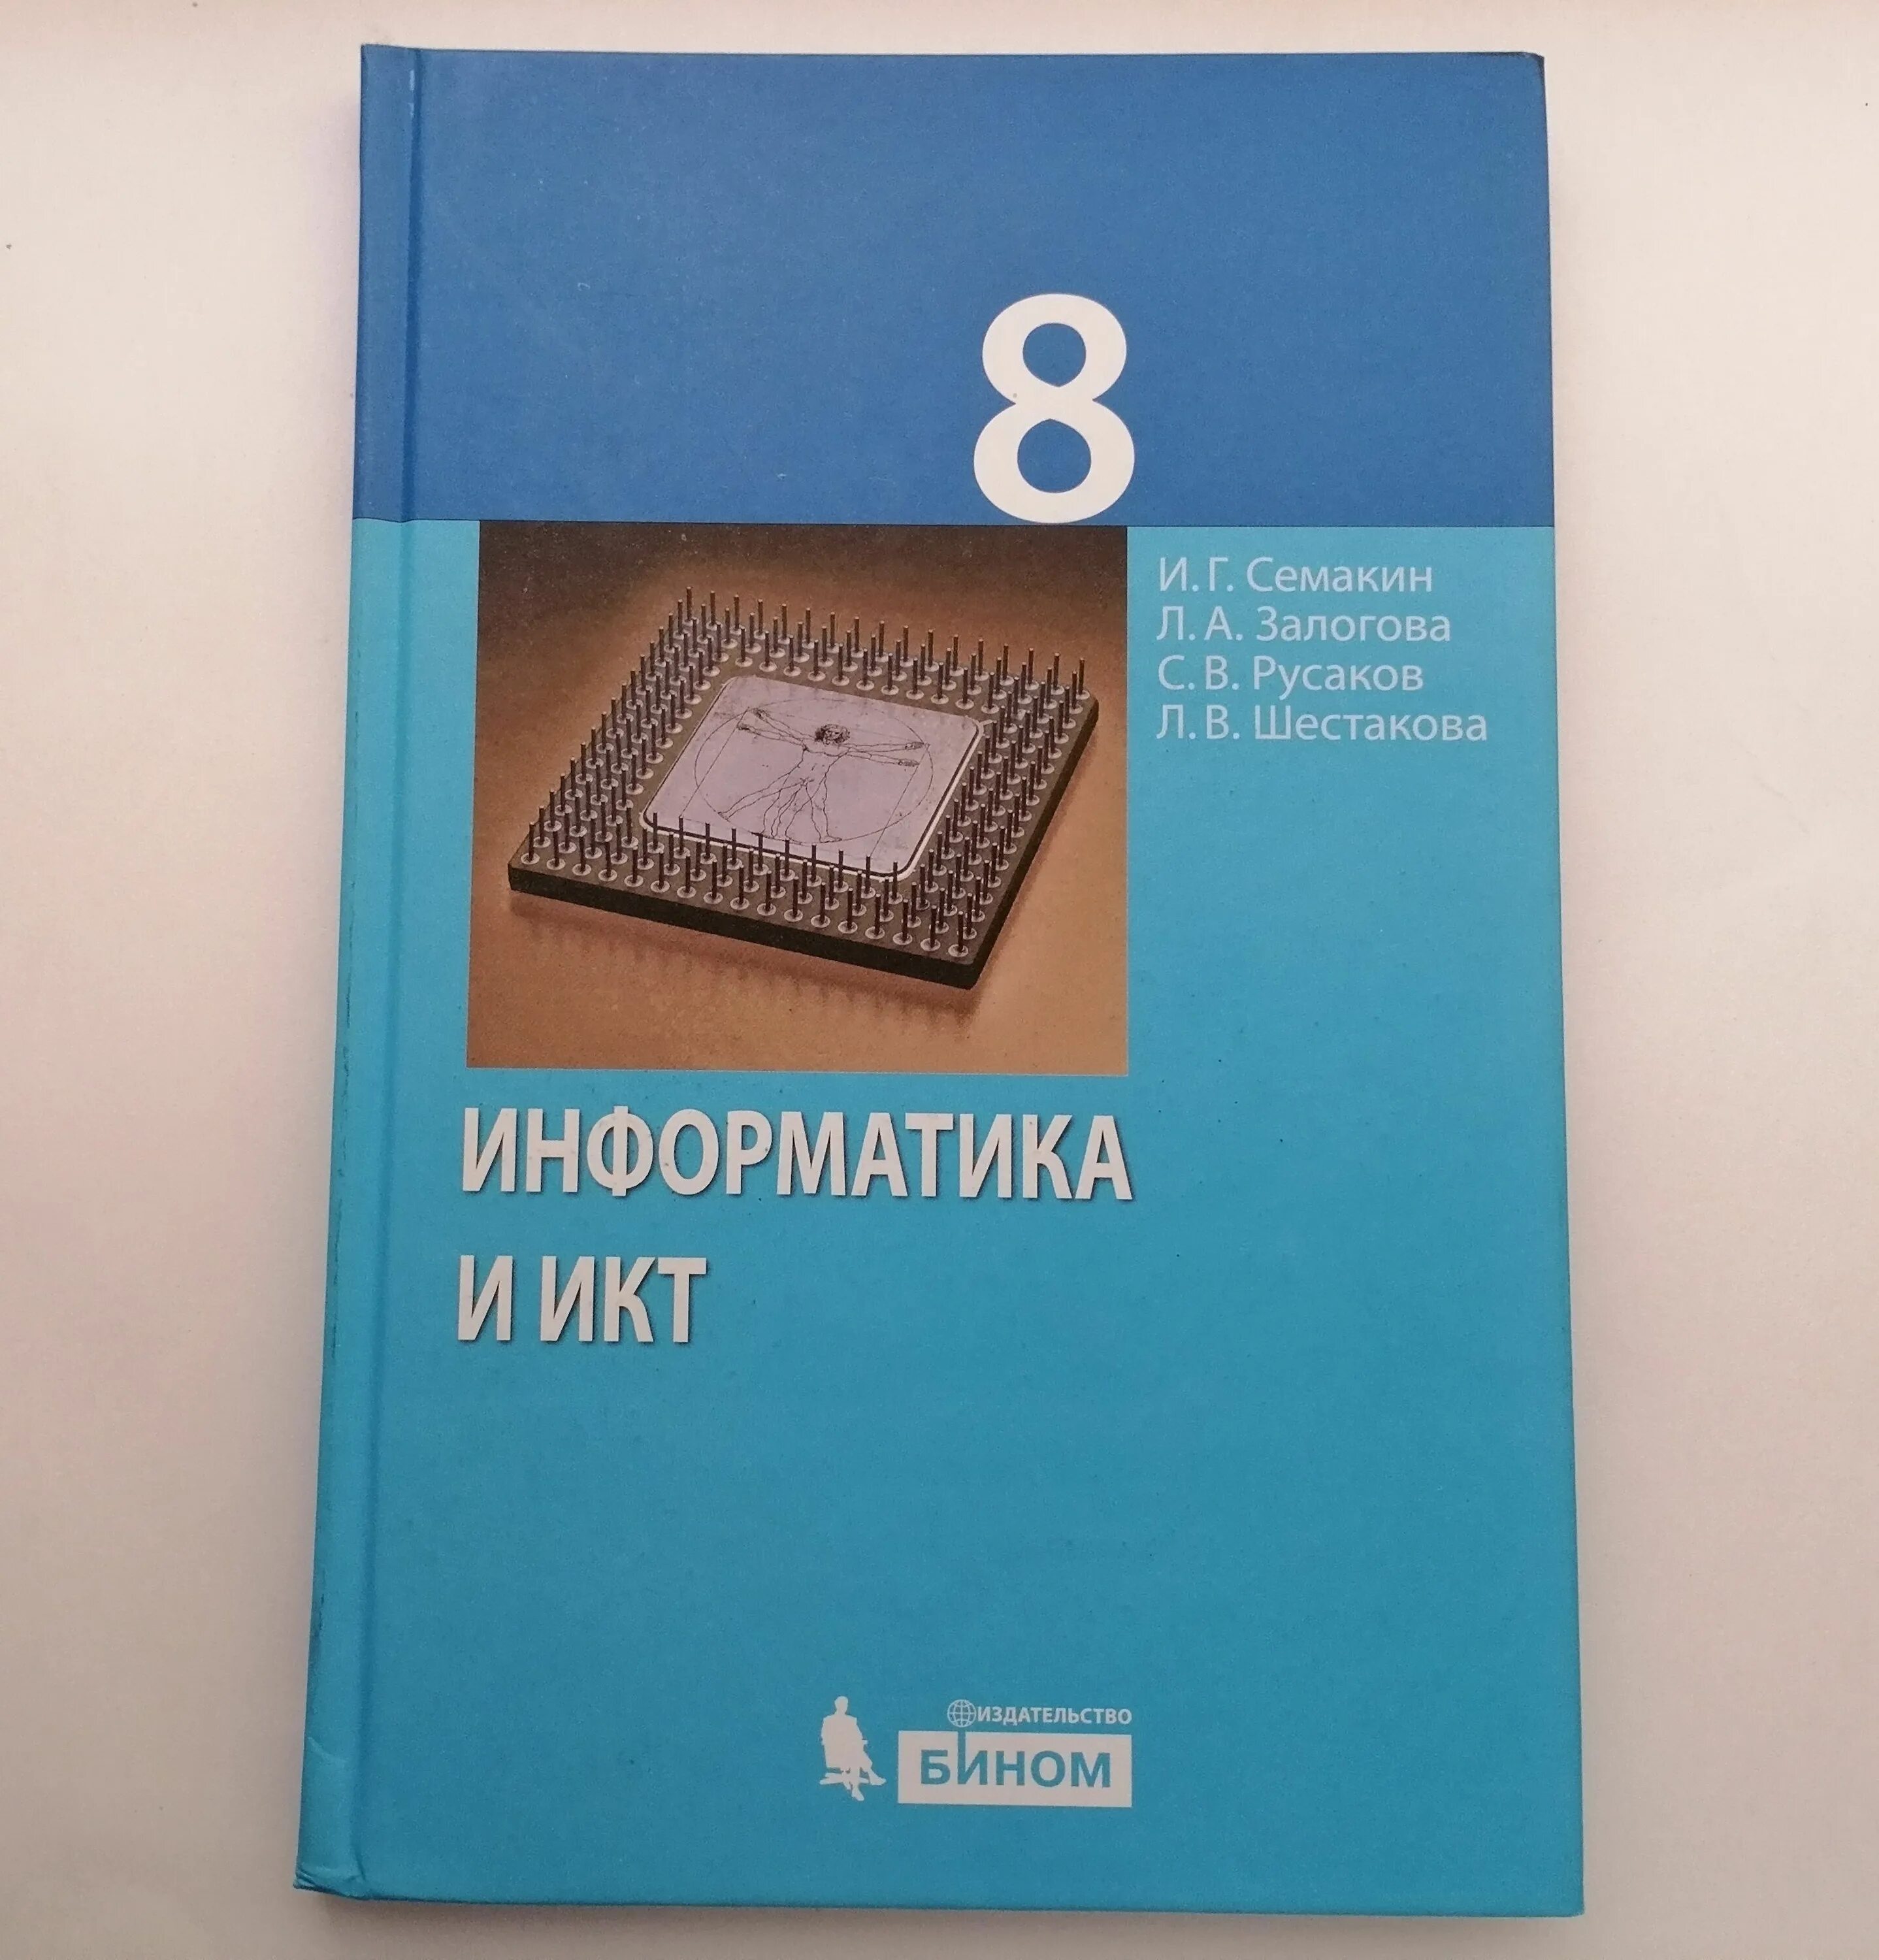 Книга по информатике 8. Учебник по информатике 8 класс. Информатика. 8 Класс. Учебник. Учебник информатики 8 класс. Учебник по информатике синий.